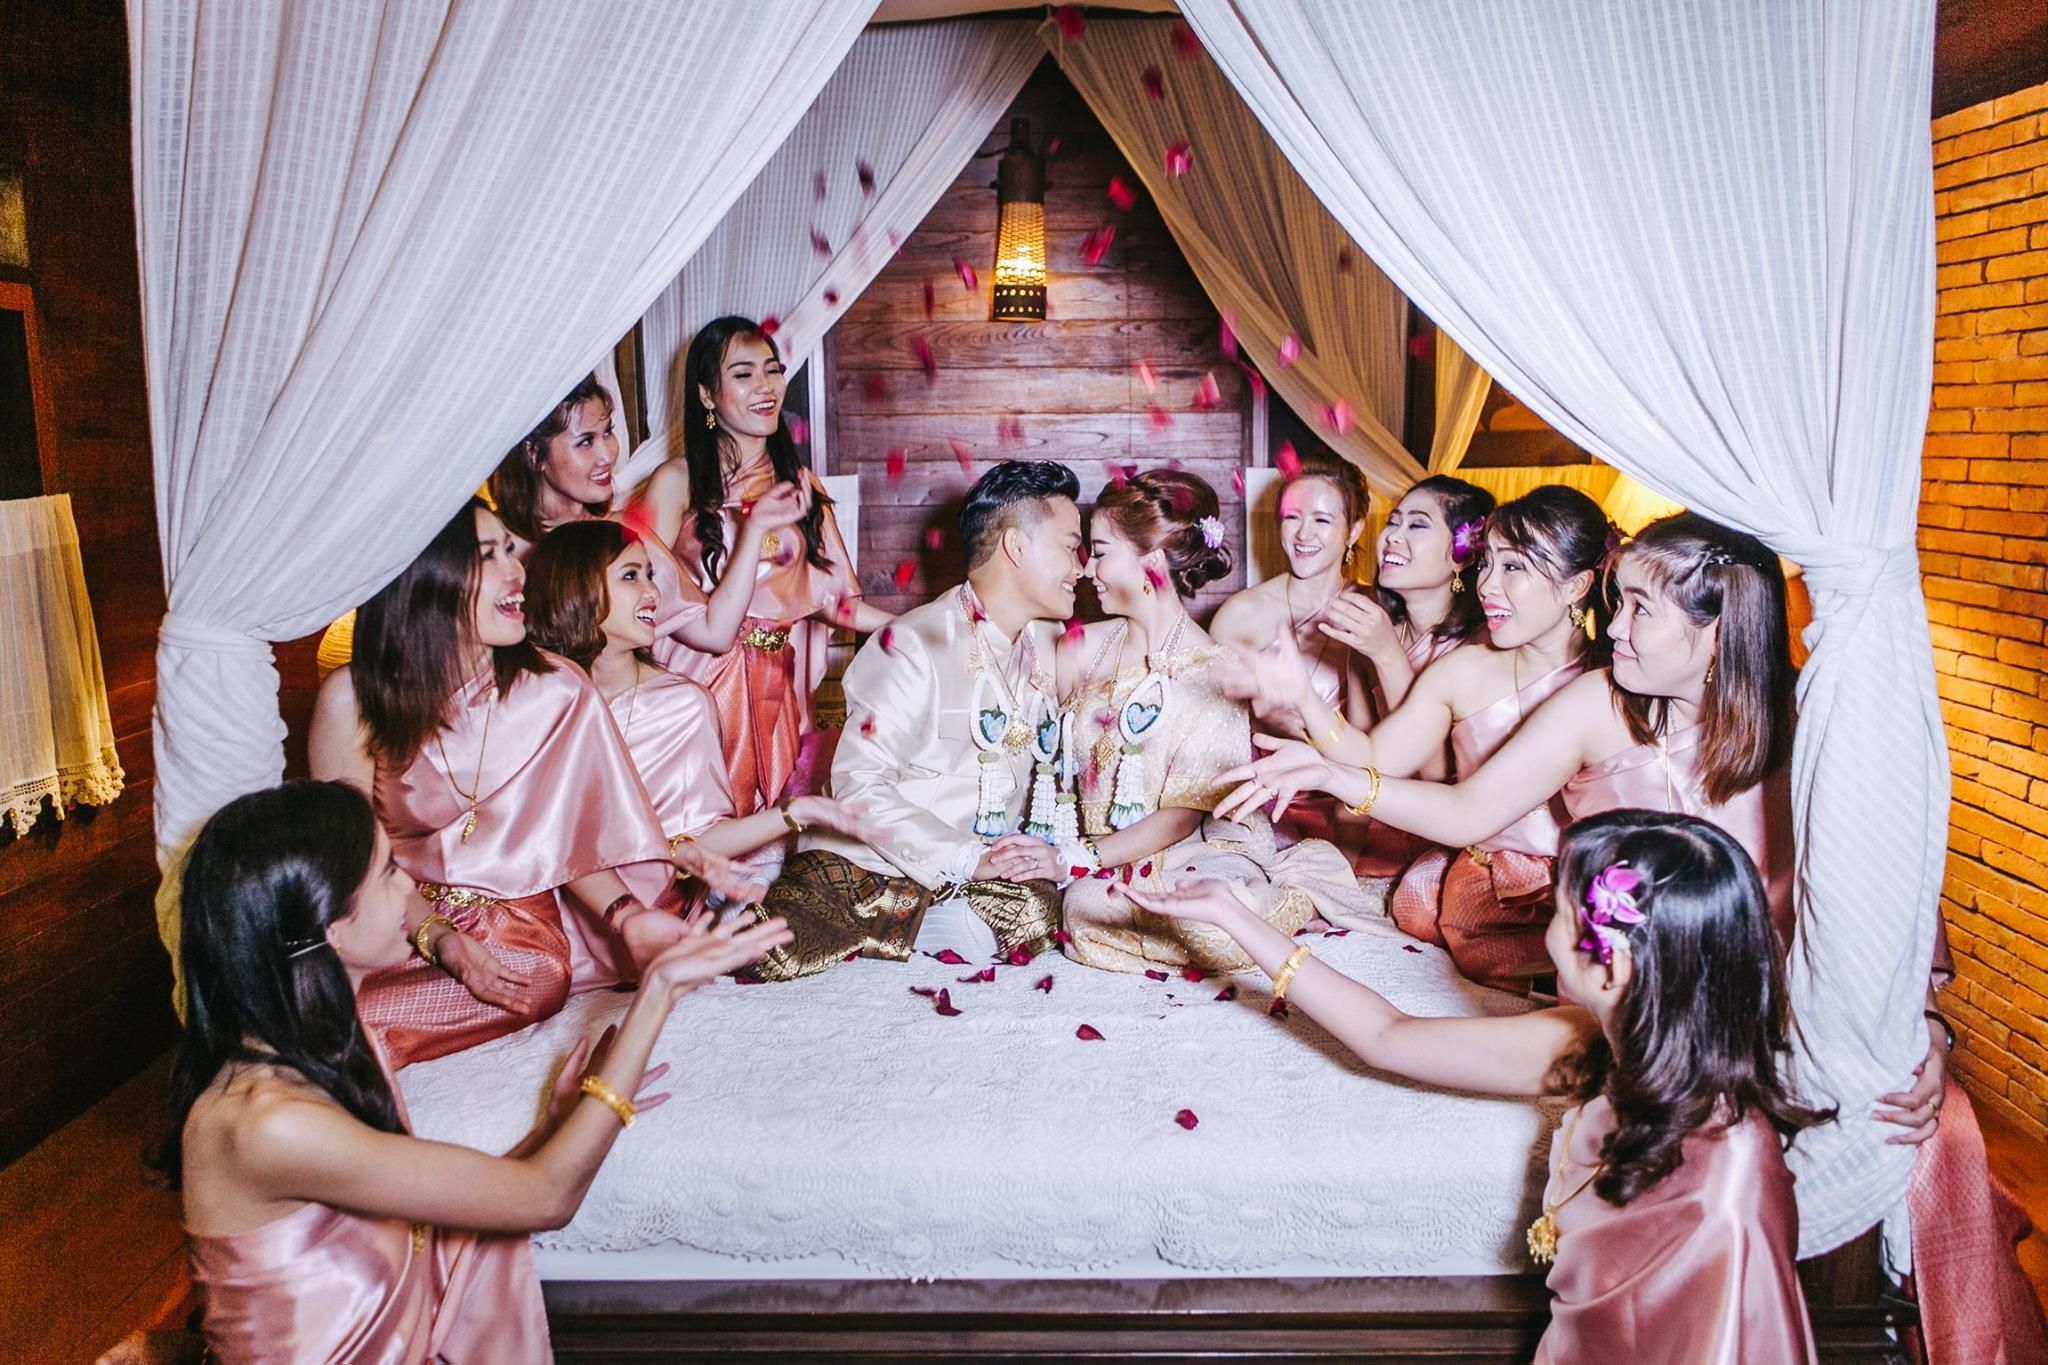 พิธีแต่งงานแบบล้านนา เชียงใหม่ ช่างภาพแต่งงาน Yai Wedding Studio 4